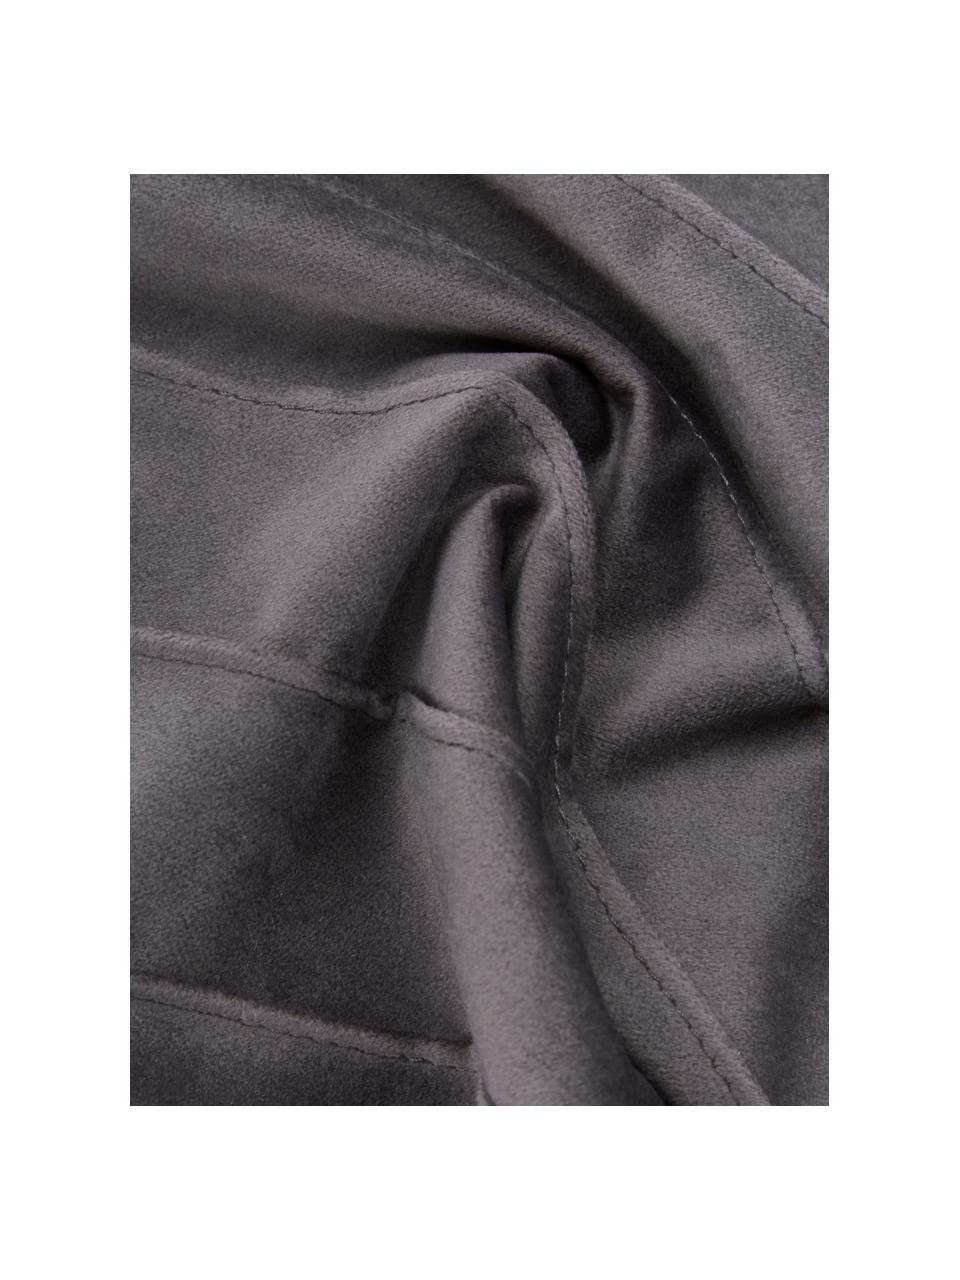 Federa arredo in velluto grigio scuro con motivo strutturato Leyla, Velluto (100% poliestere), Grigio, Larg. 40 x Lung. 40 cm